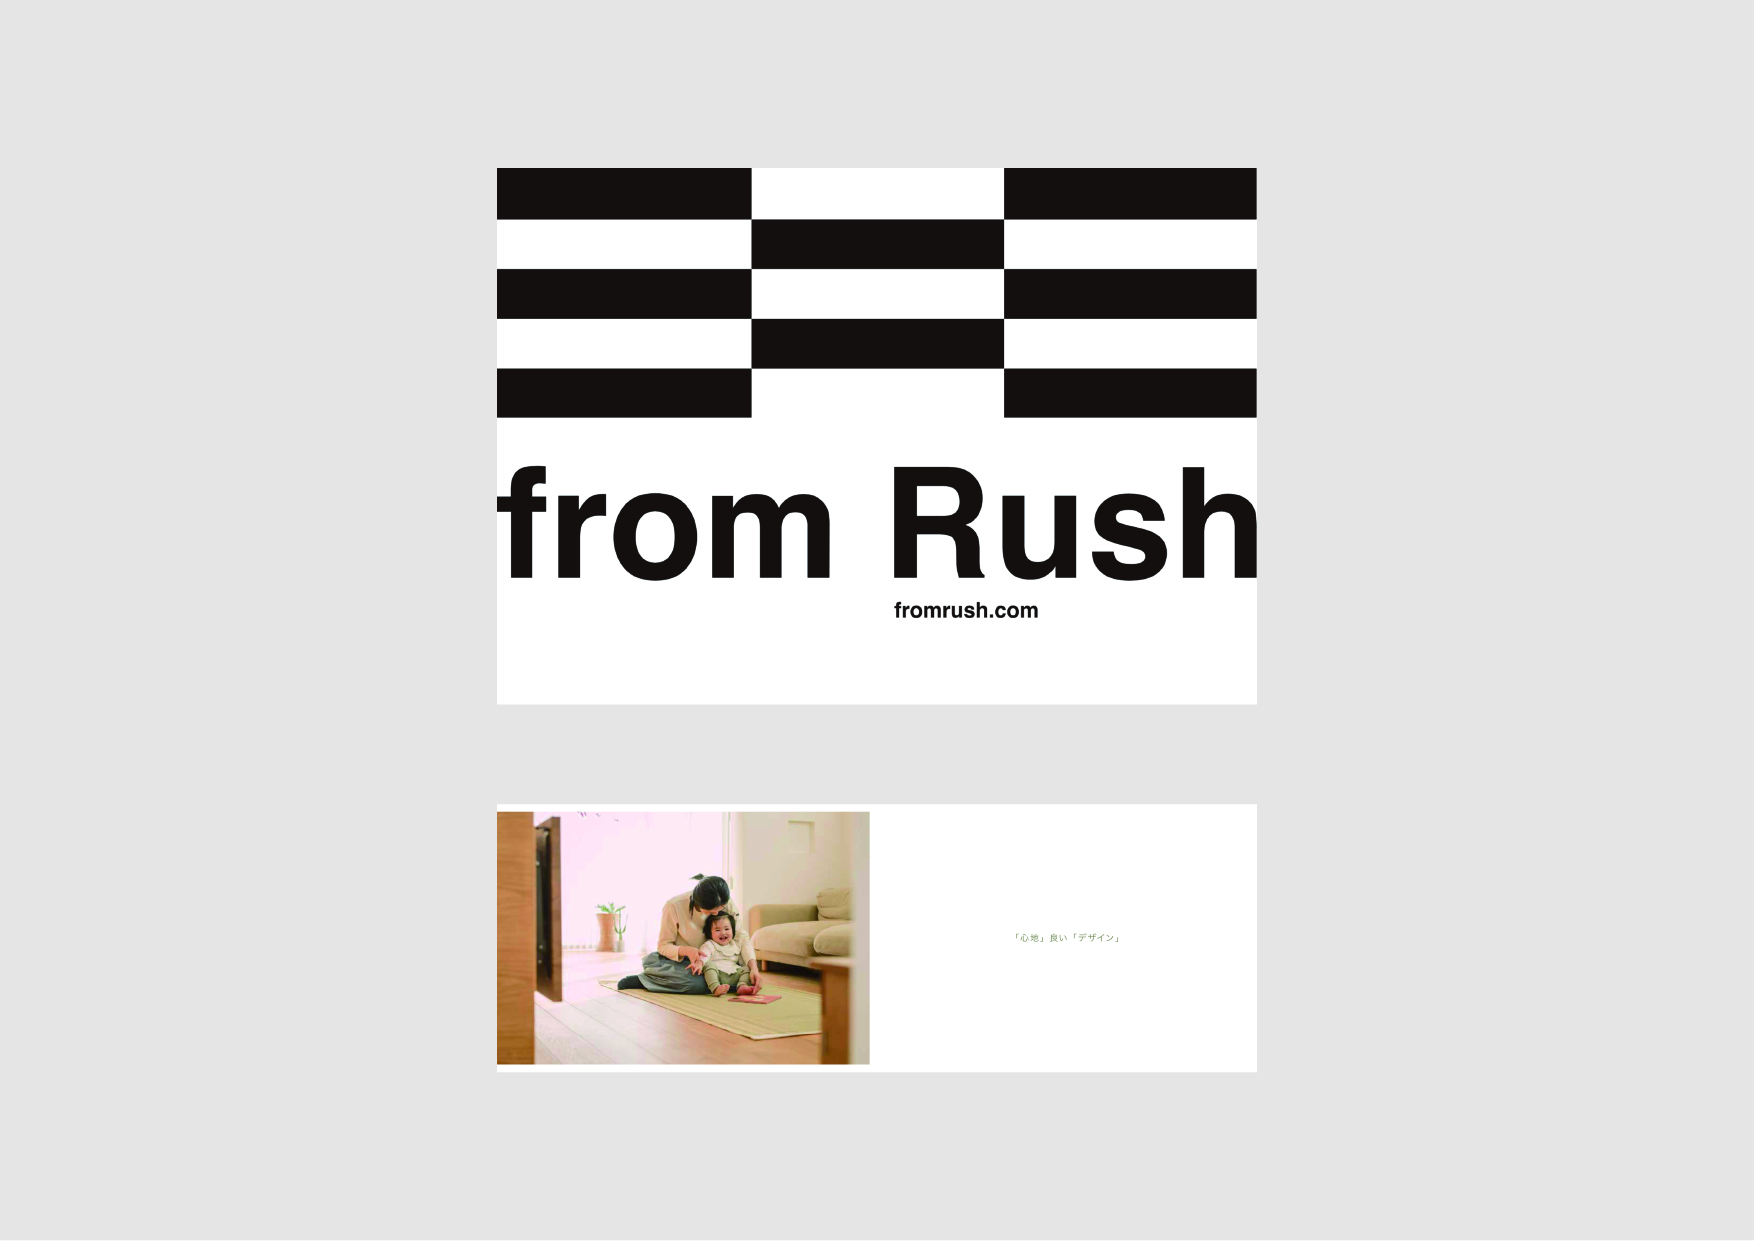 01_13_from Rush_02